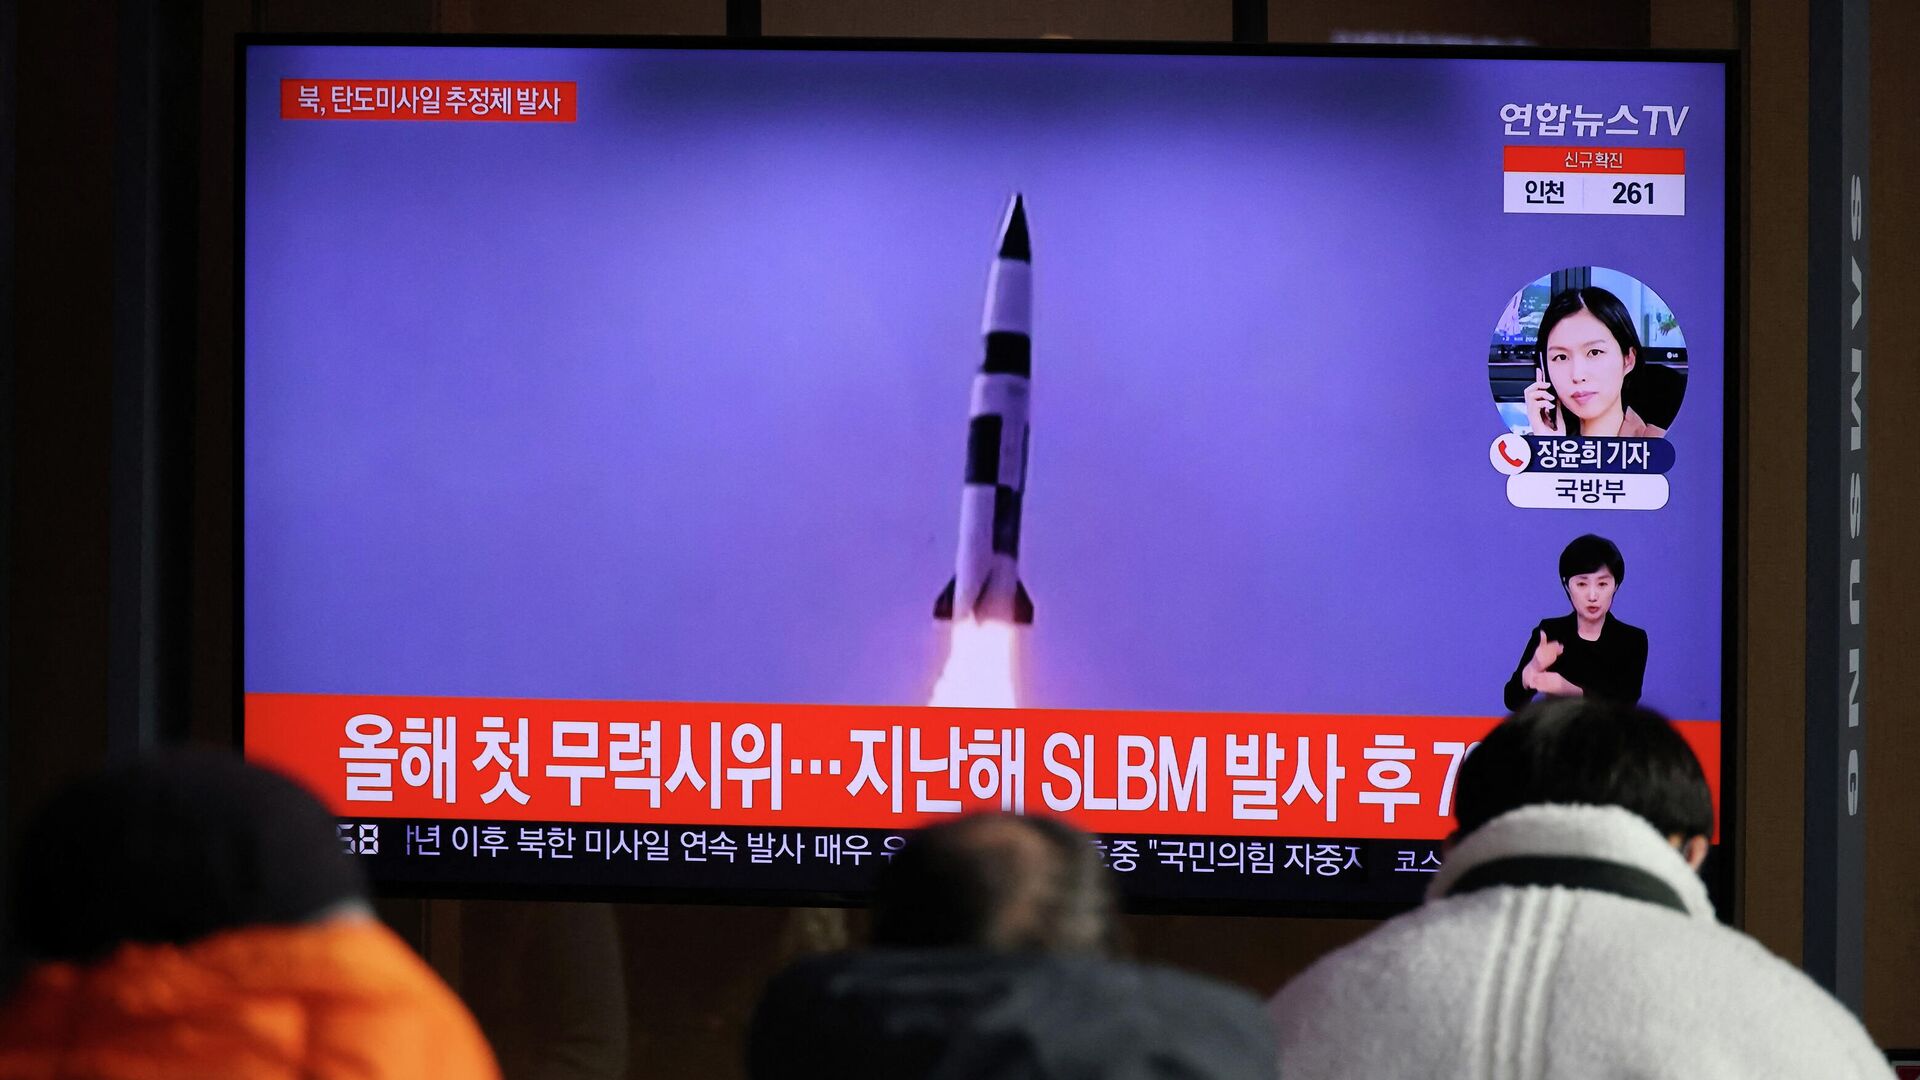 El lanzamiento de un misil norcoreano - Sputnik Mundo, 1920, 12.01.2022